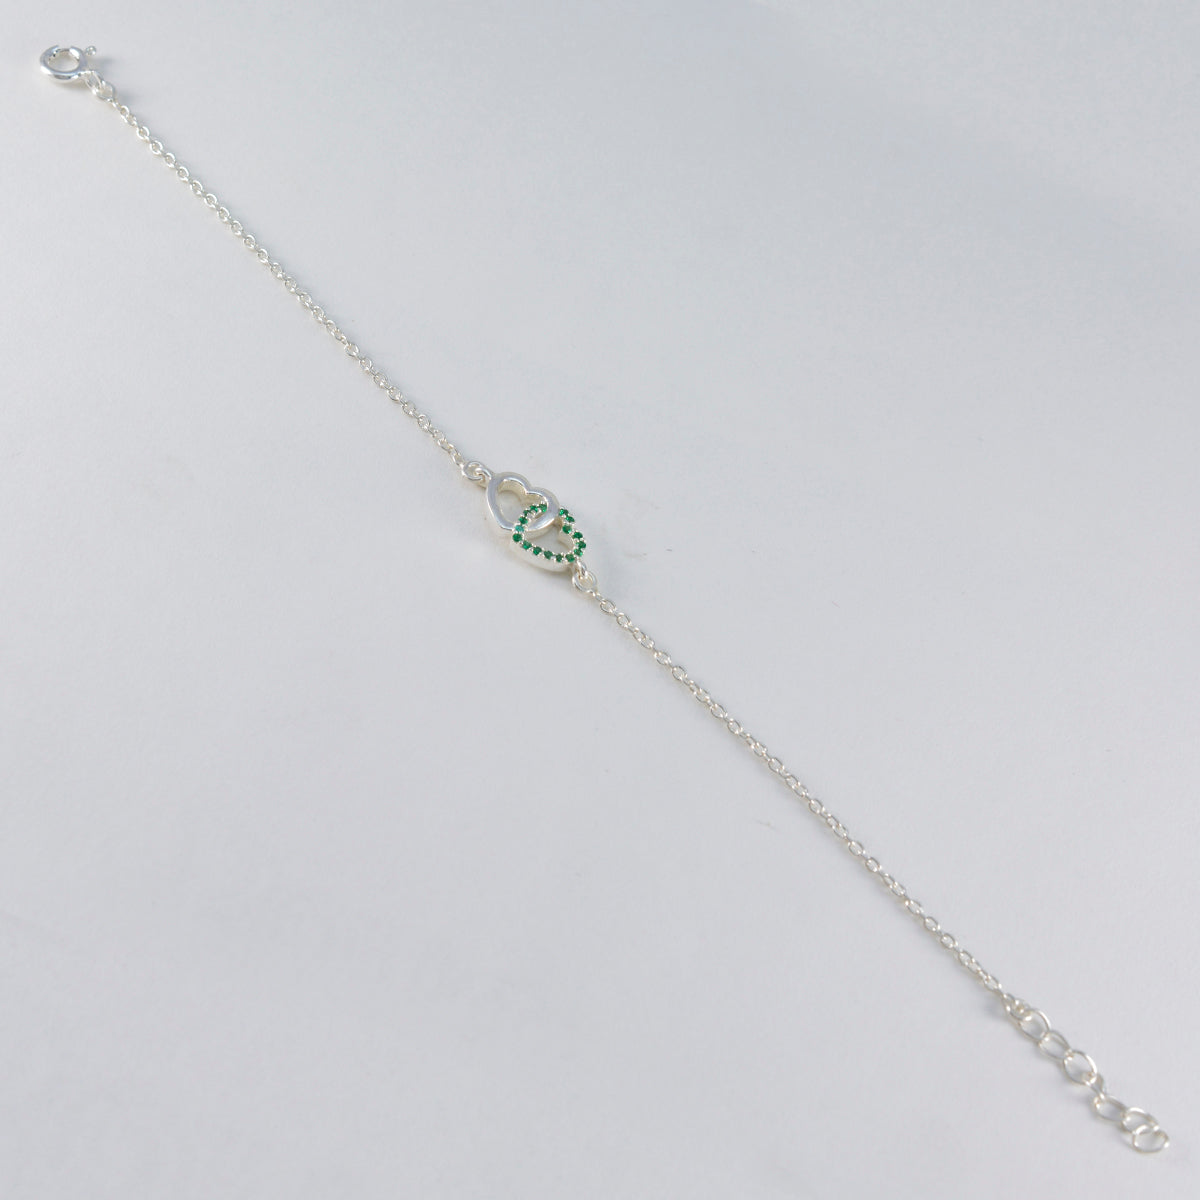 riyo grossist 925 sterling silver armband för kvinnor smaragd cz armband bezel inställning armband med fjäderring charm armband l storlek 6-8,5 tum.